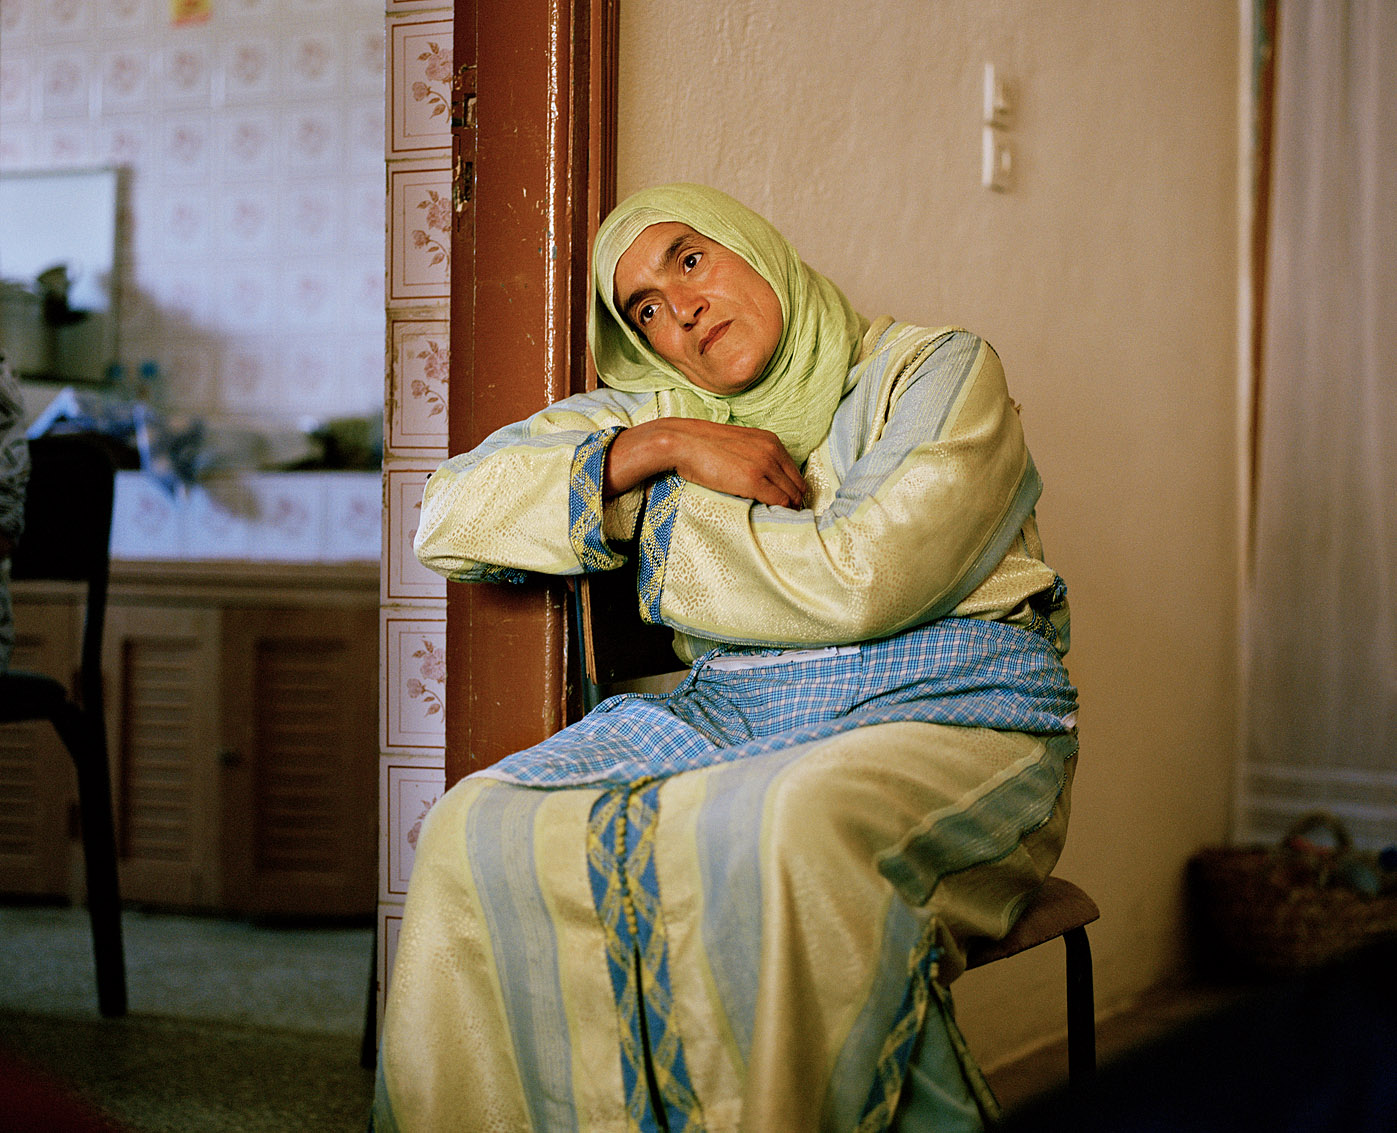 L'une des femmes de la coopérative de femmes Achifae (guérison en Berbère) du village de Ben Smim, Maroc.